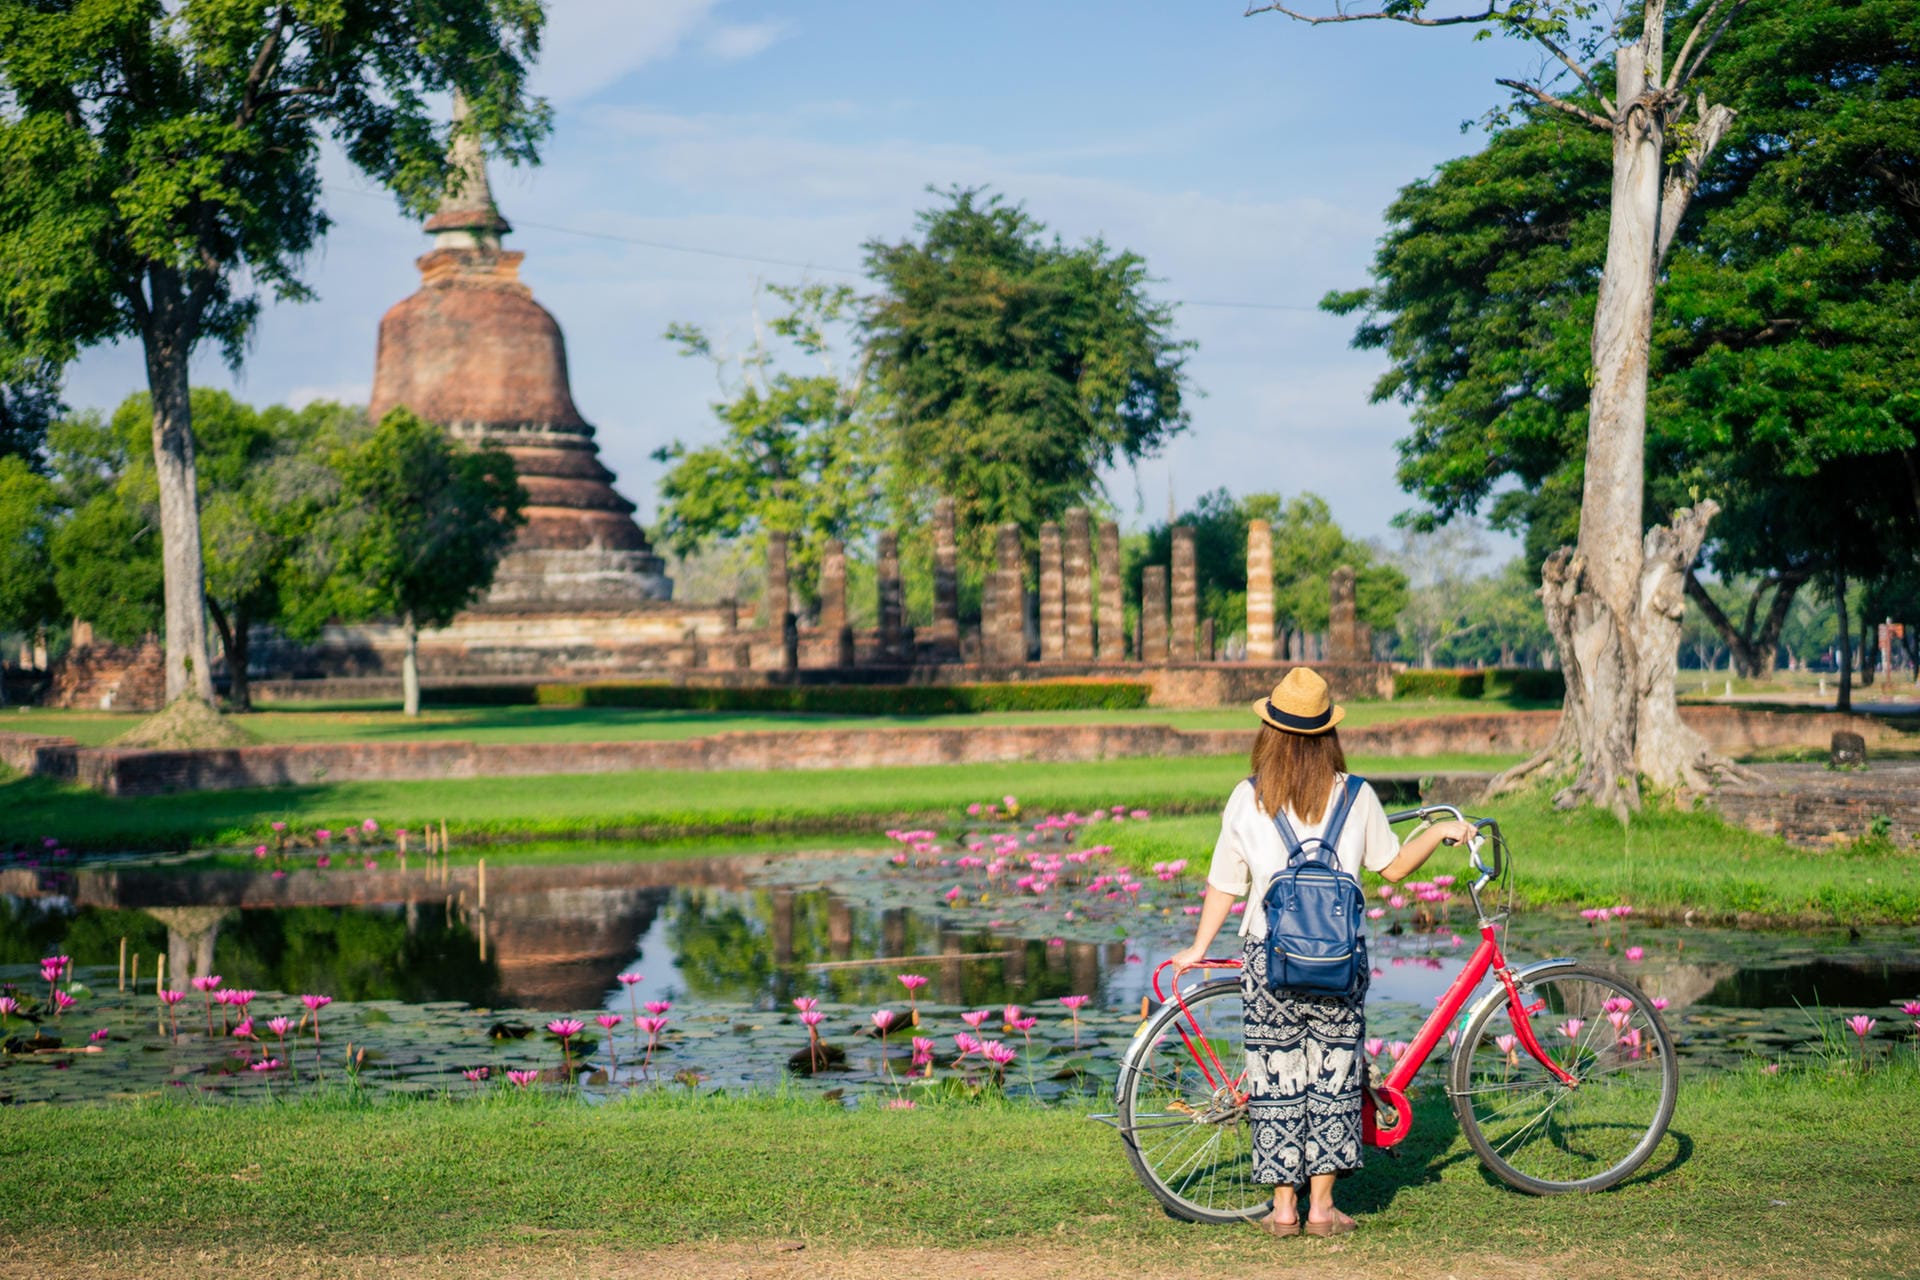 Frau vor dem Tempel Wat Mahathat: In Bangkok können Reisende Partys feiern, aber auch buddhistische Tempel entdecken.